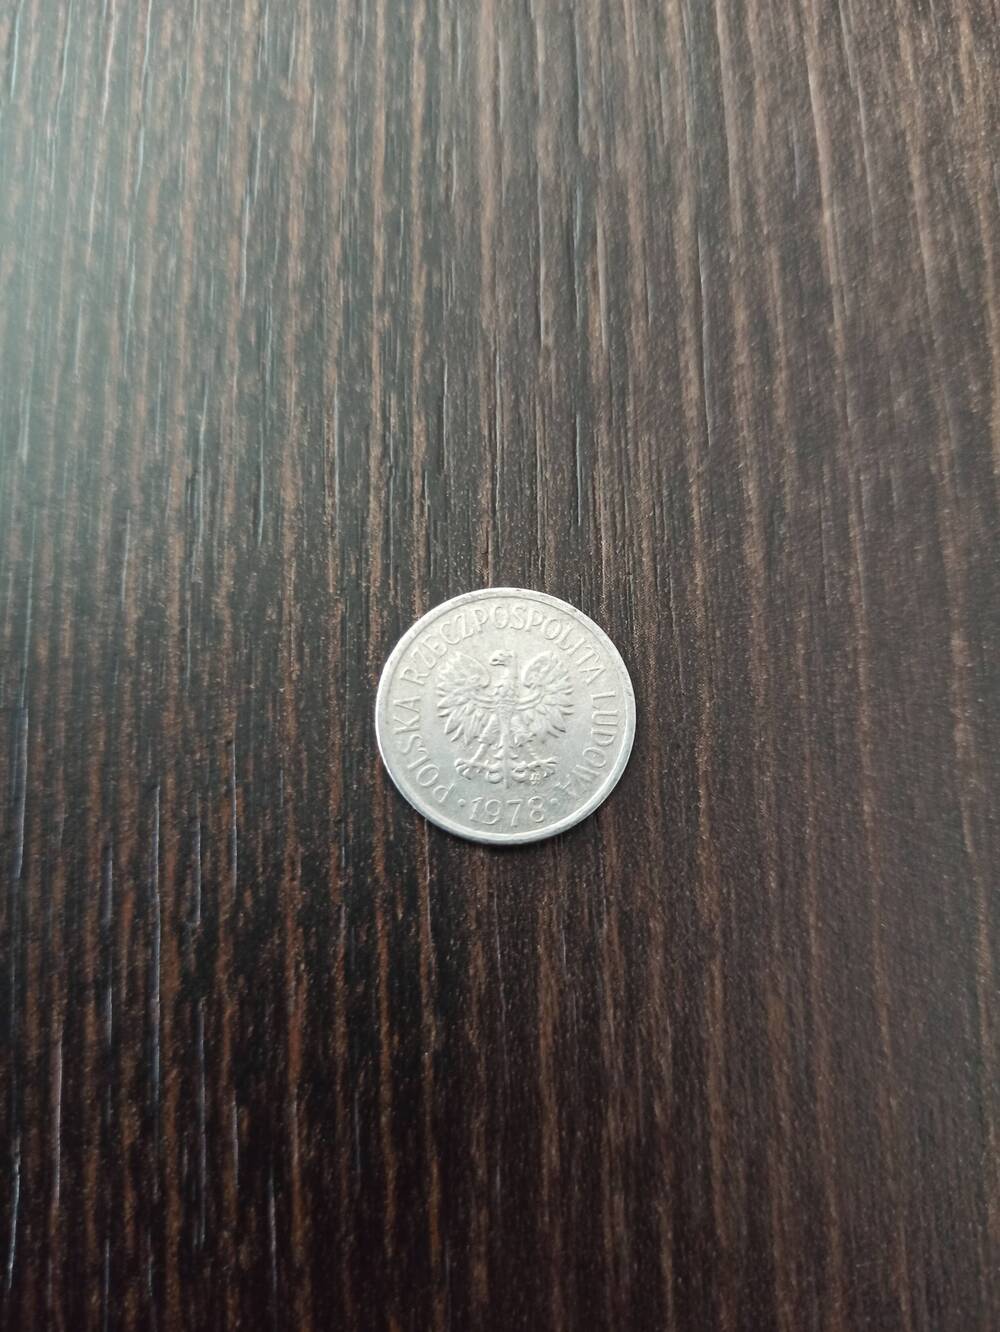 Нумизматика. Монета  Польши достоинством 10 грошей 1978 года.